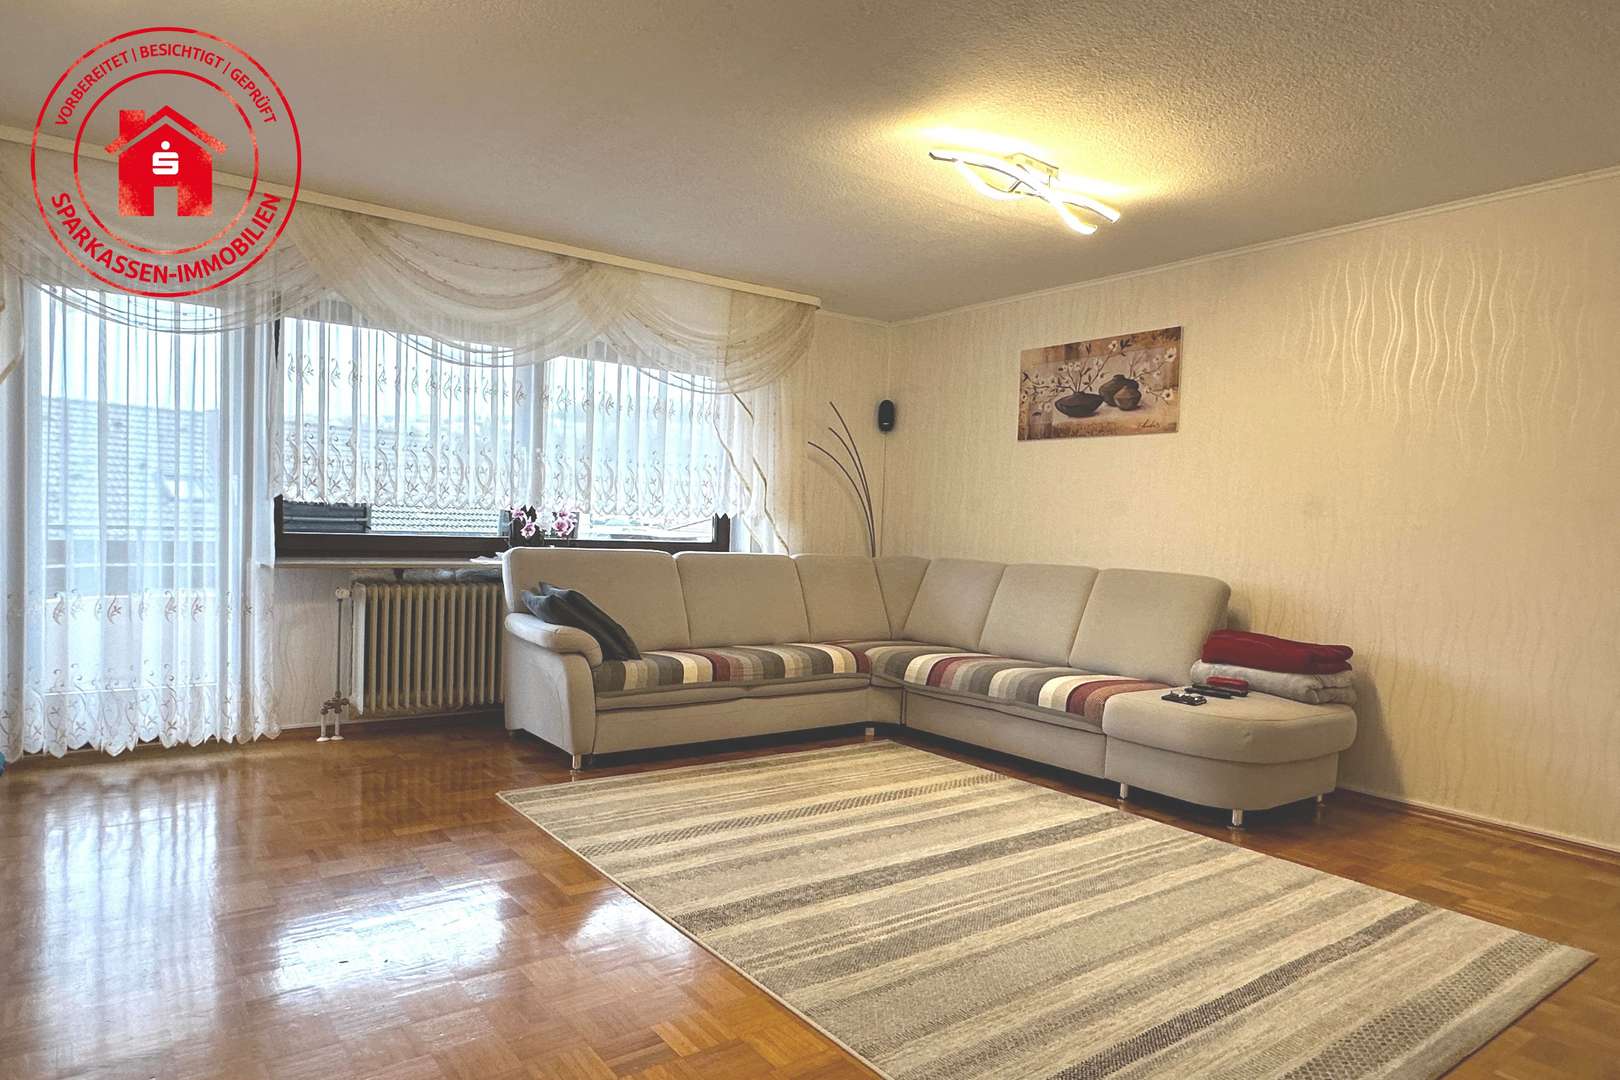 Wohnen - Etagenwohnung in 97980 Bad Mergentheim mit 78m² kaufen